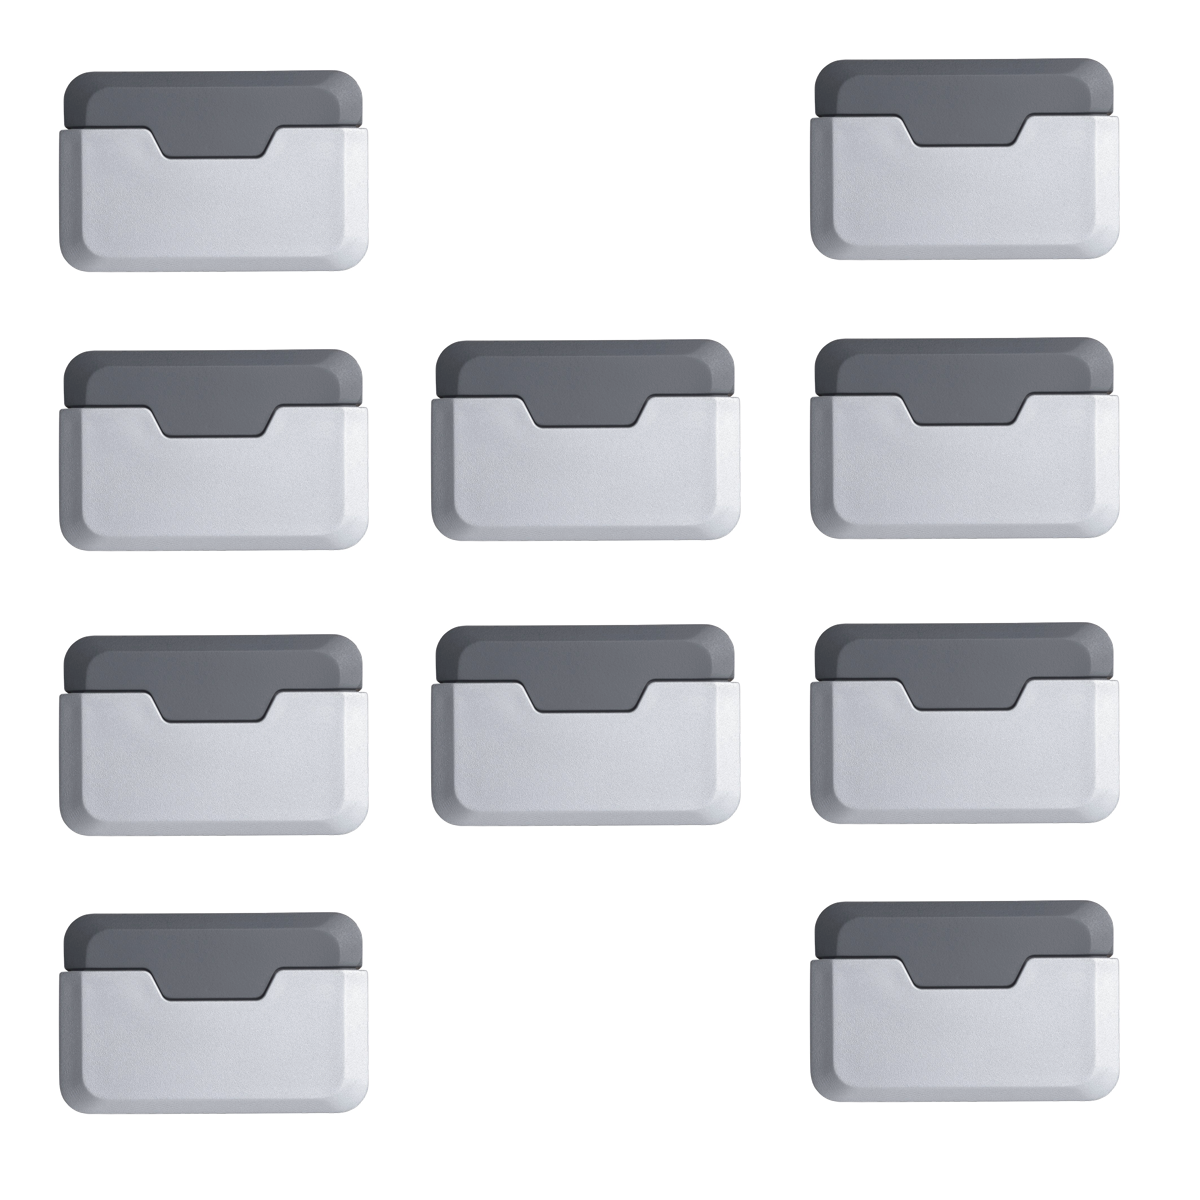 10 topes de puerta rectangulares adhesivos decorativos de aluminio en acabado metalizado